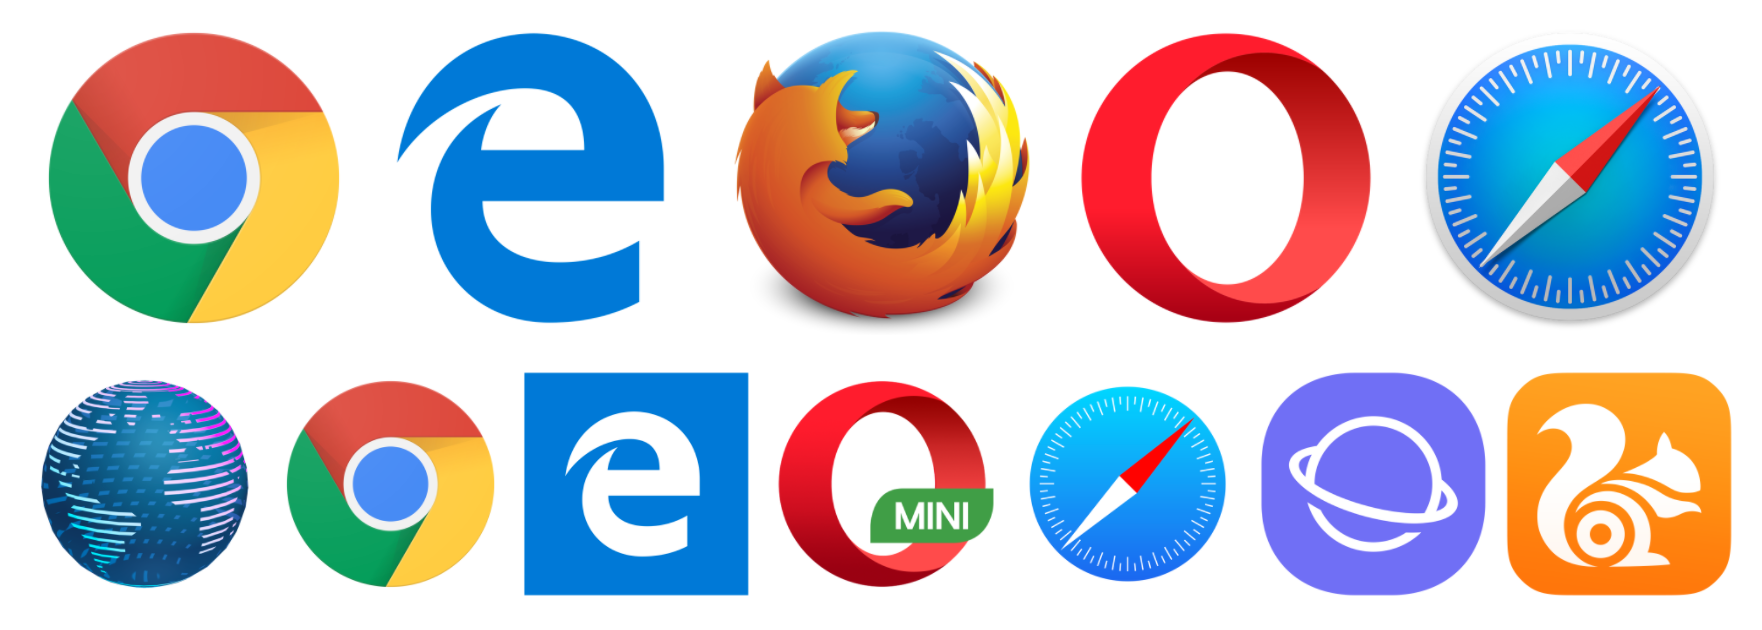 Вб через браузер. Браузер картинки. Разные браузеры. Логотипы браузеров. Иконки популярных браузеров.